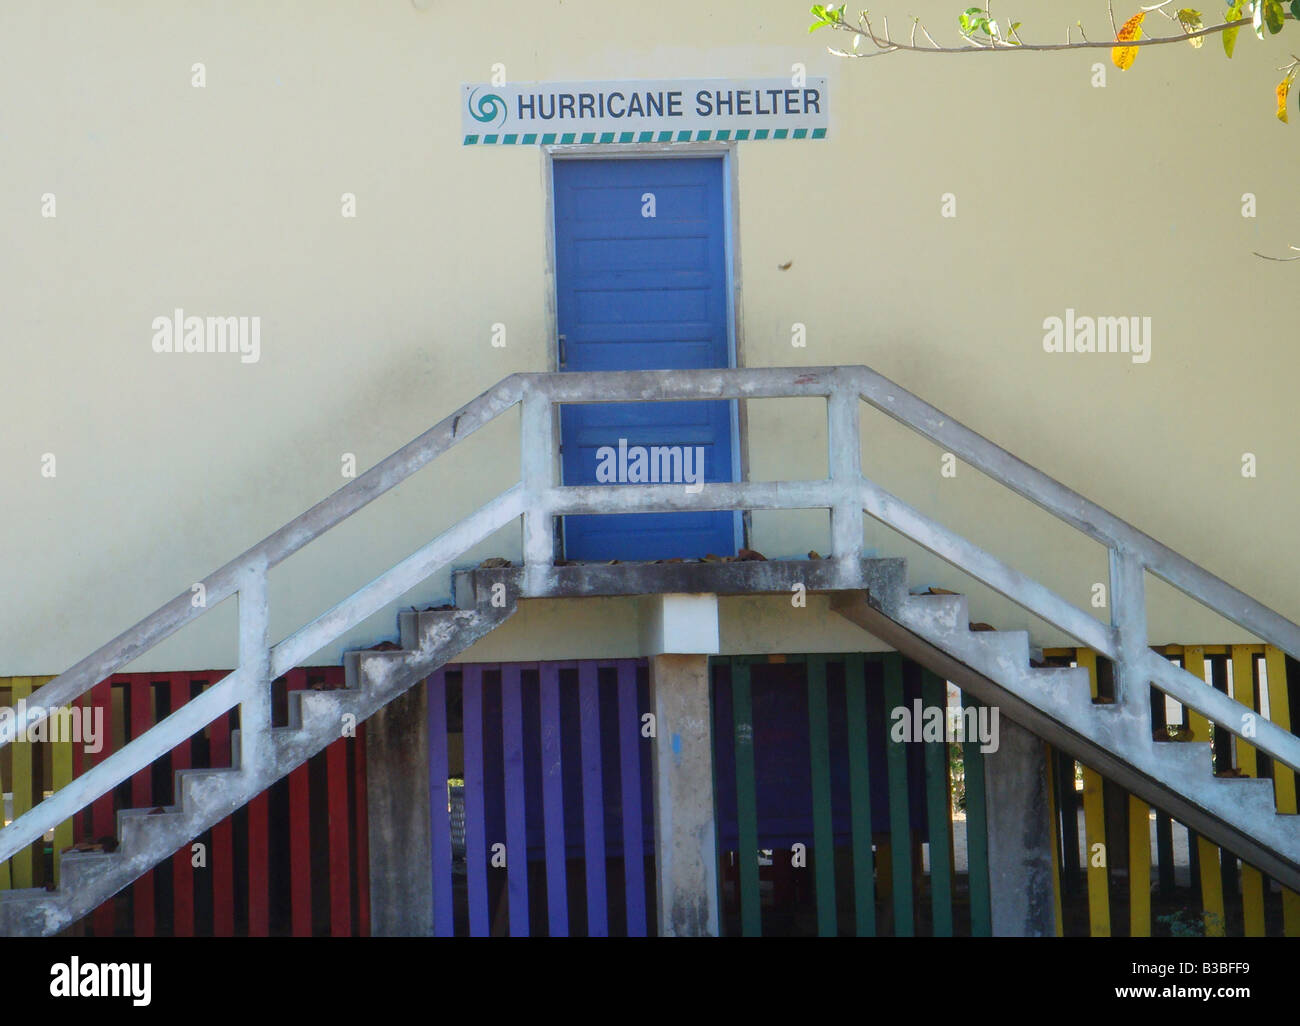 Hurricane Shelter, Belize Stock Photo